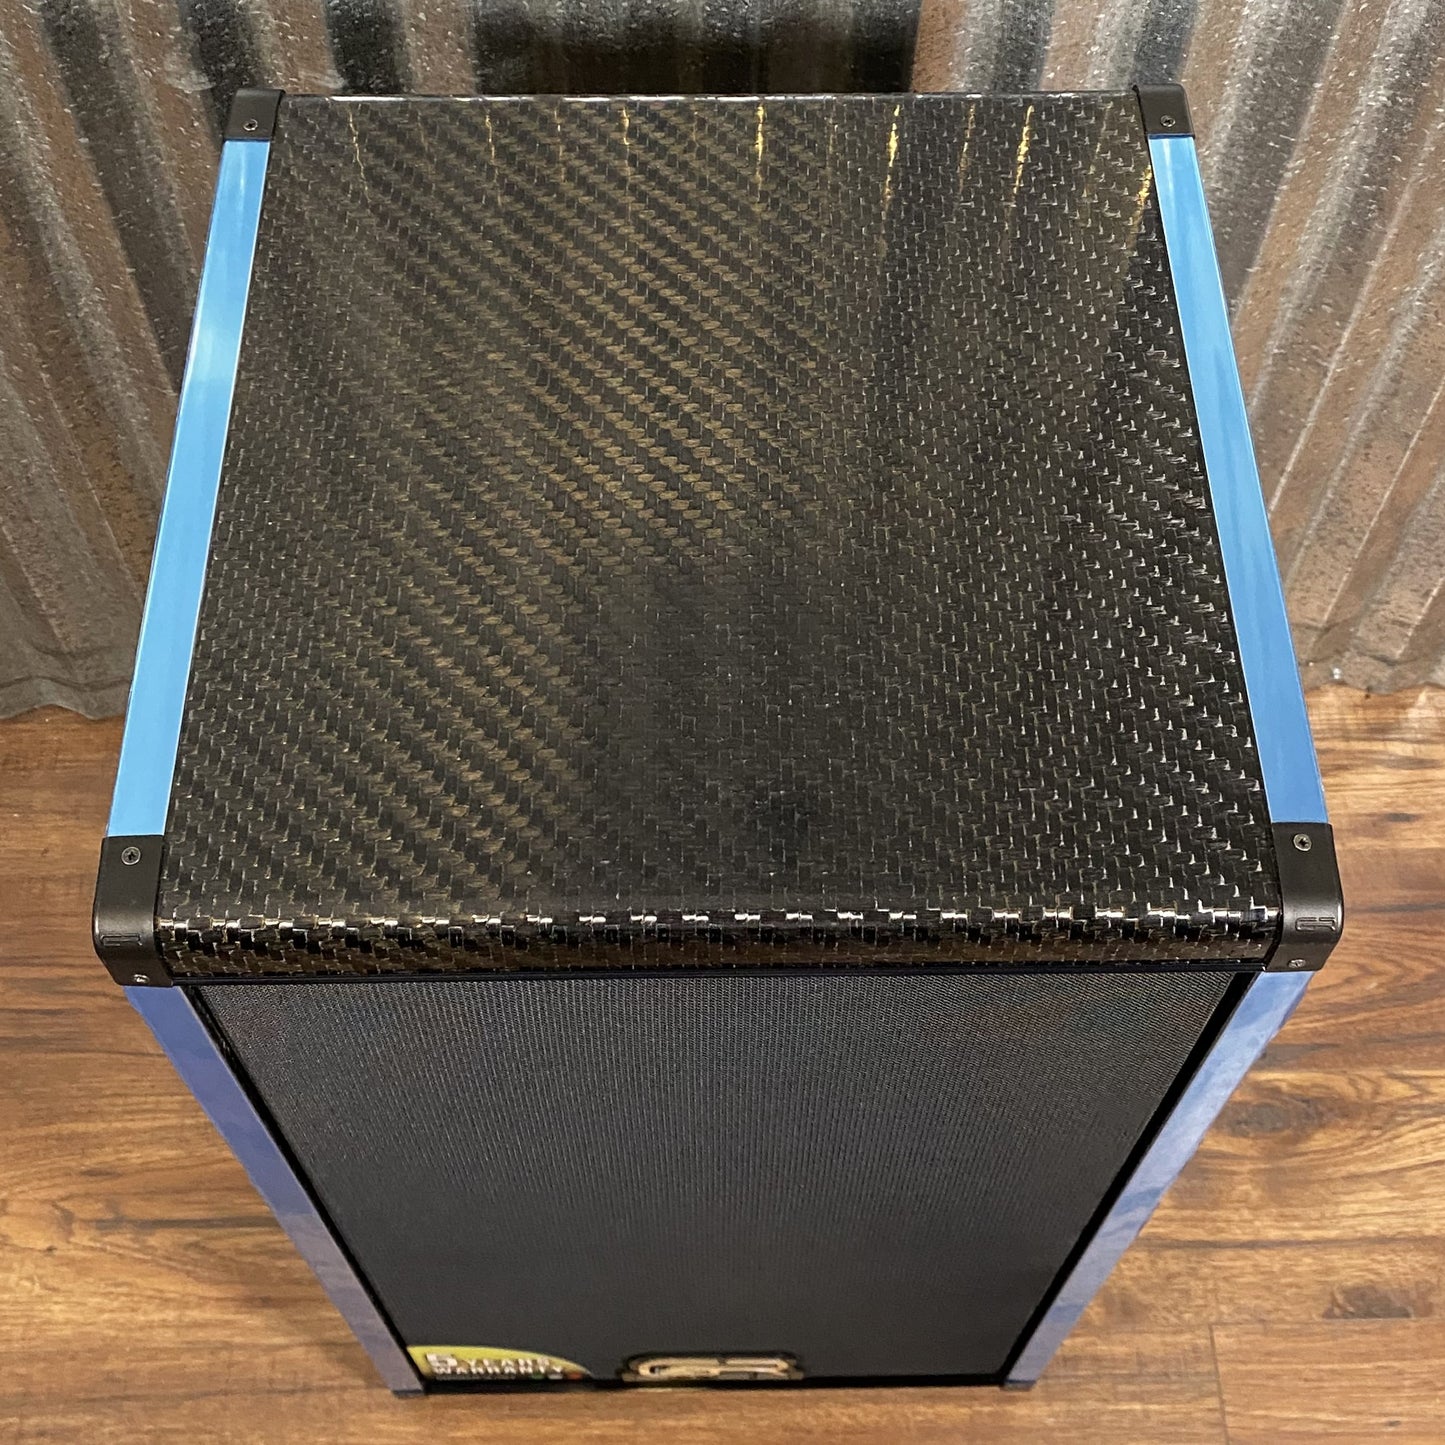 GR Bass AT 212 SLIM ACT Carbon Fiber 2x12 900 Watt 4 Ohm Active Powered Bass Speaker Cabinet